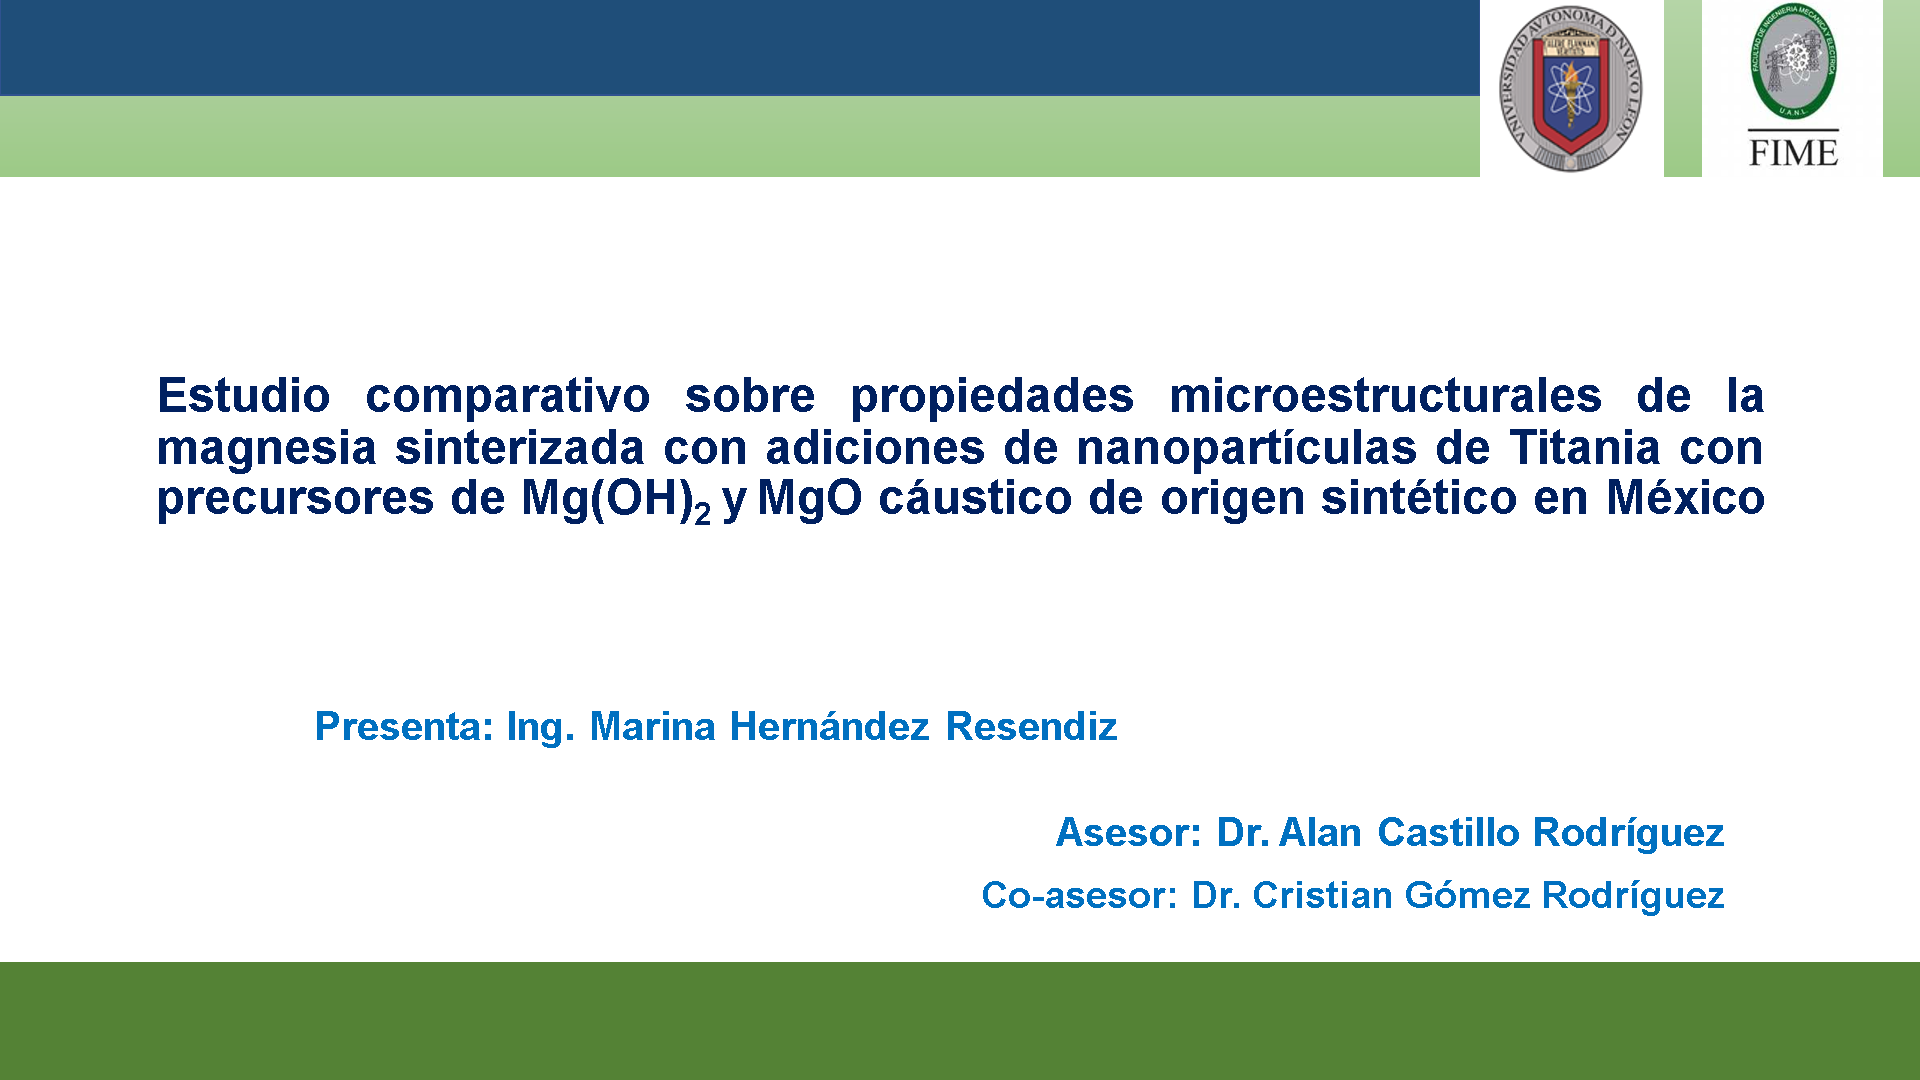 Estudio comparativo sobre propiedades microestructurales de la magnesia sinterizada con adiciones de nanopartículas de Titania